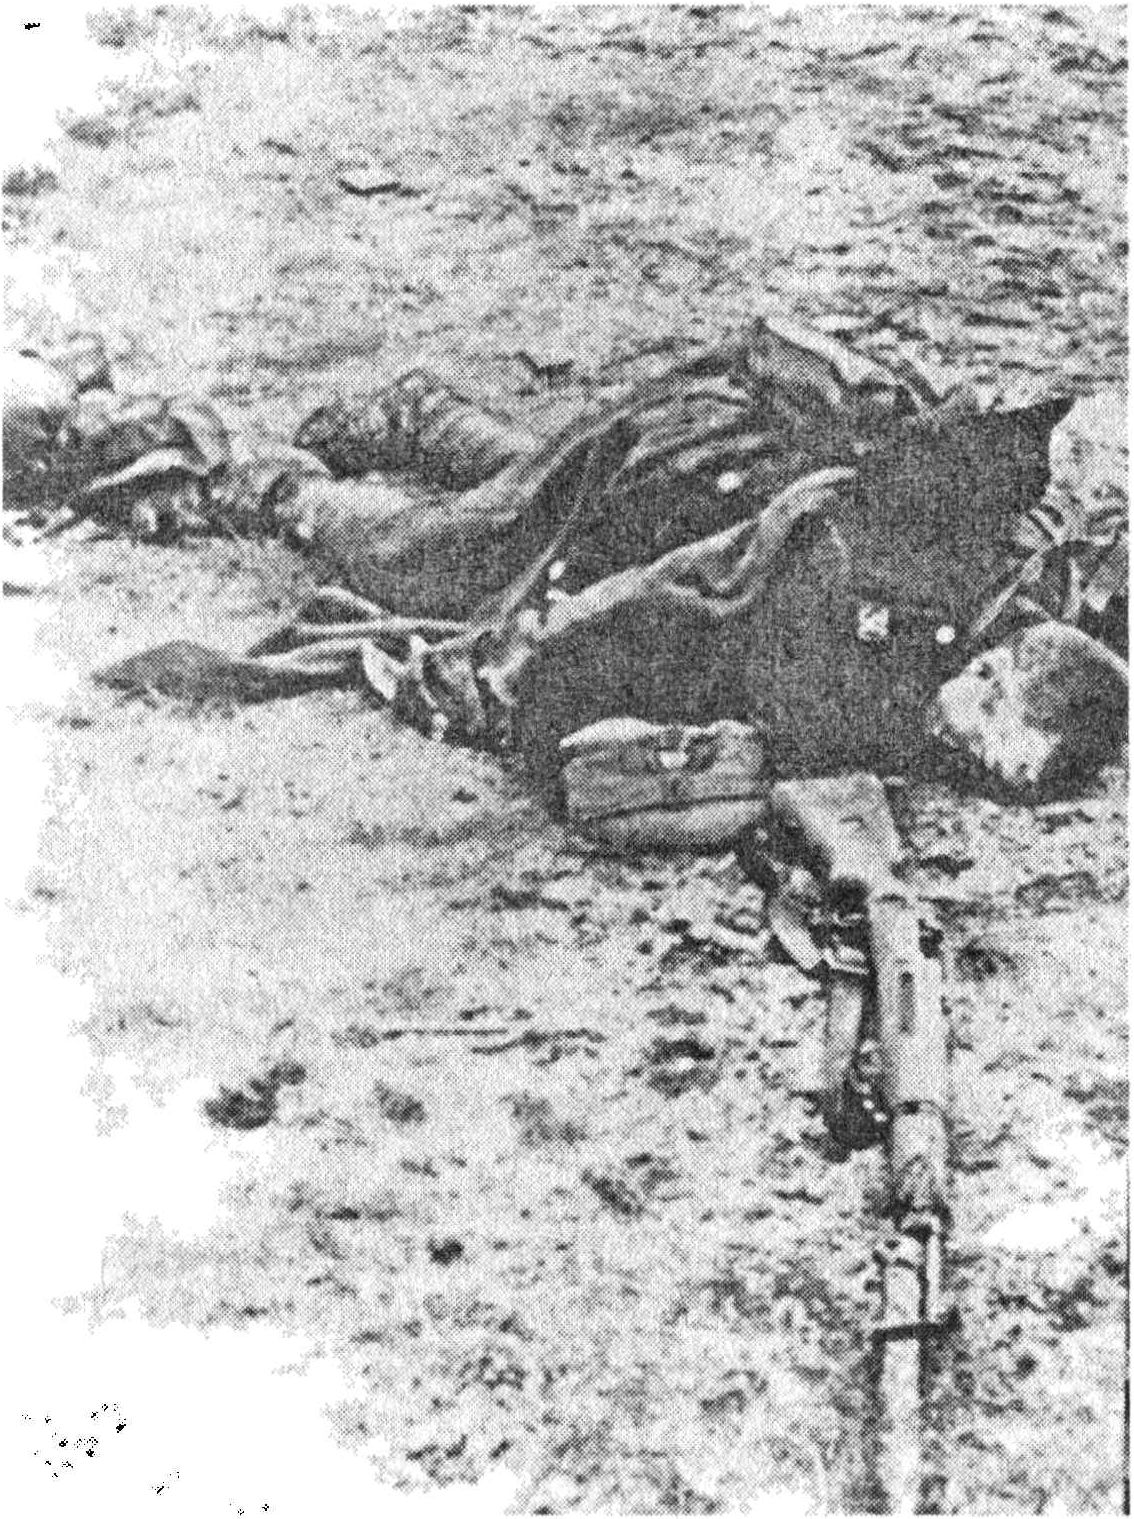 Убитый в ходе штыковой атаки польский солдат 30-го пехотного полка. Битва на Бзурс